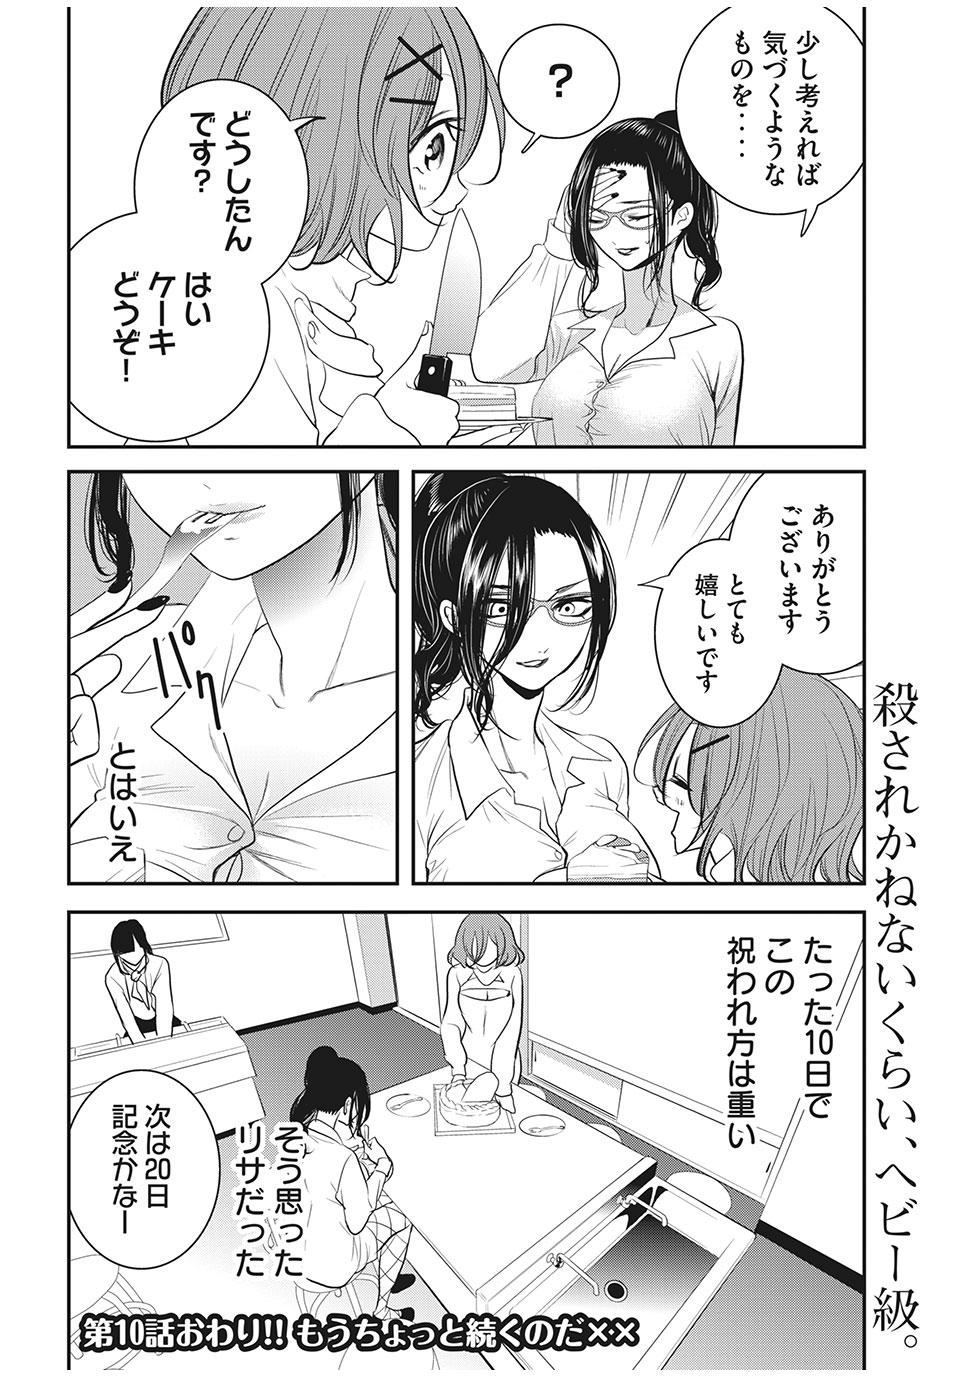 Eigo ×× Sensei - Chapter 10 - Page 12